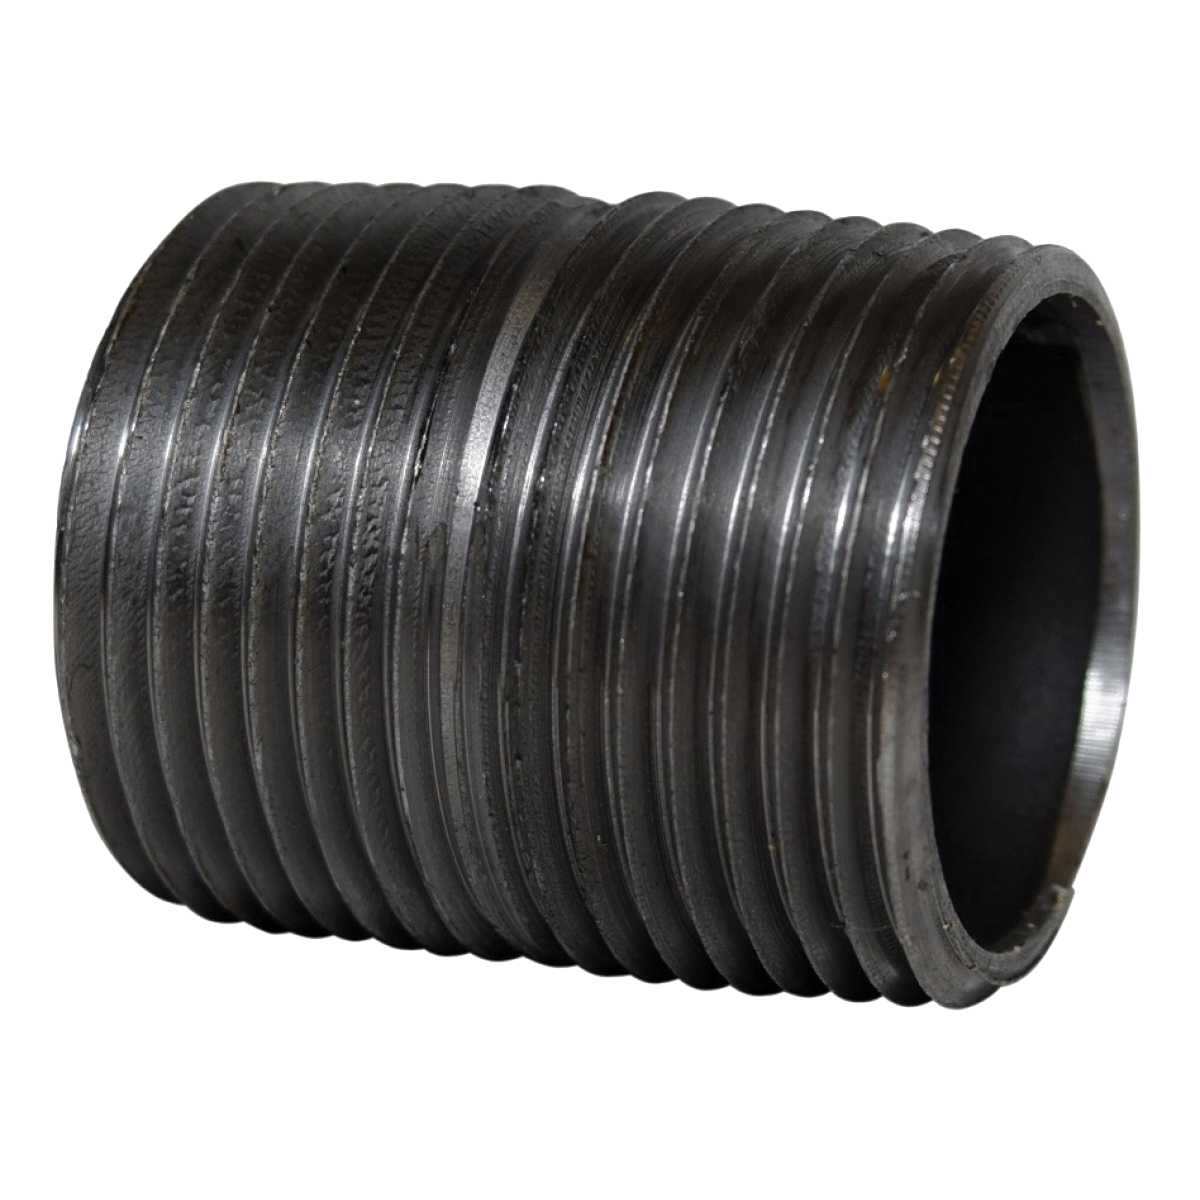 Black Steel SCH 40 Welded Pipe Nipple, 1 in x 2 in, MNPT